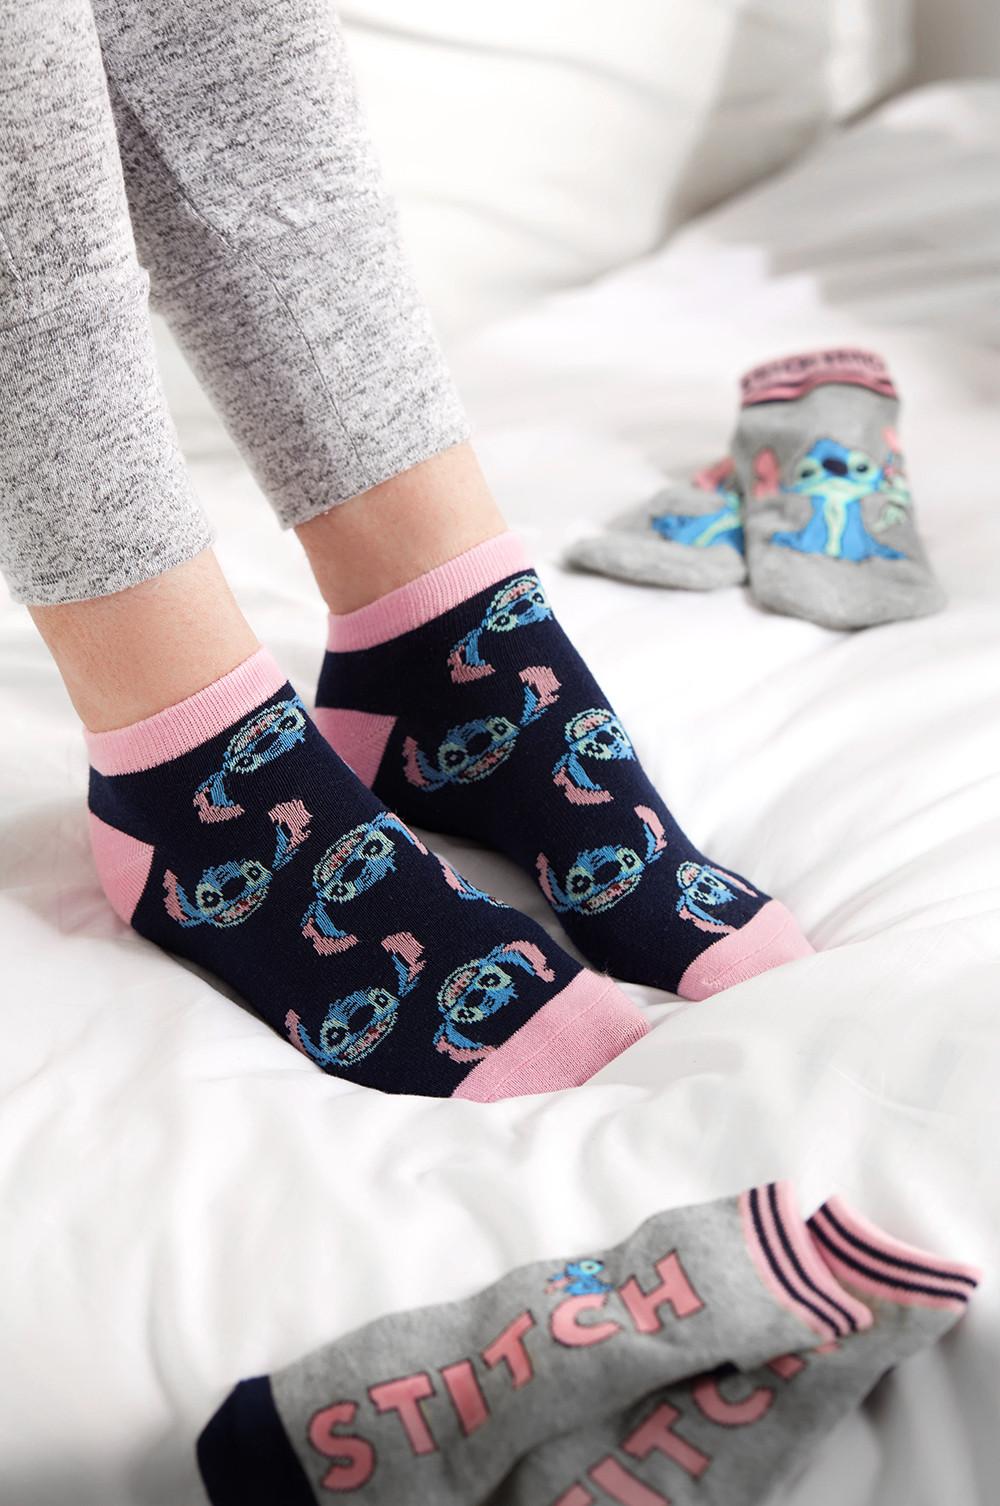 Primark Stitch socks image